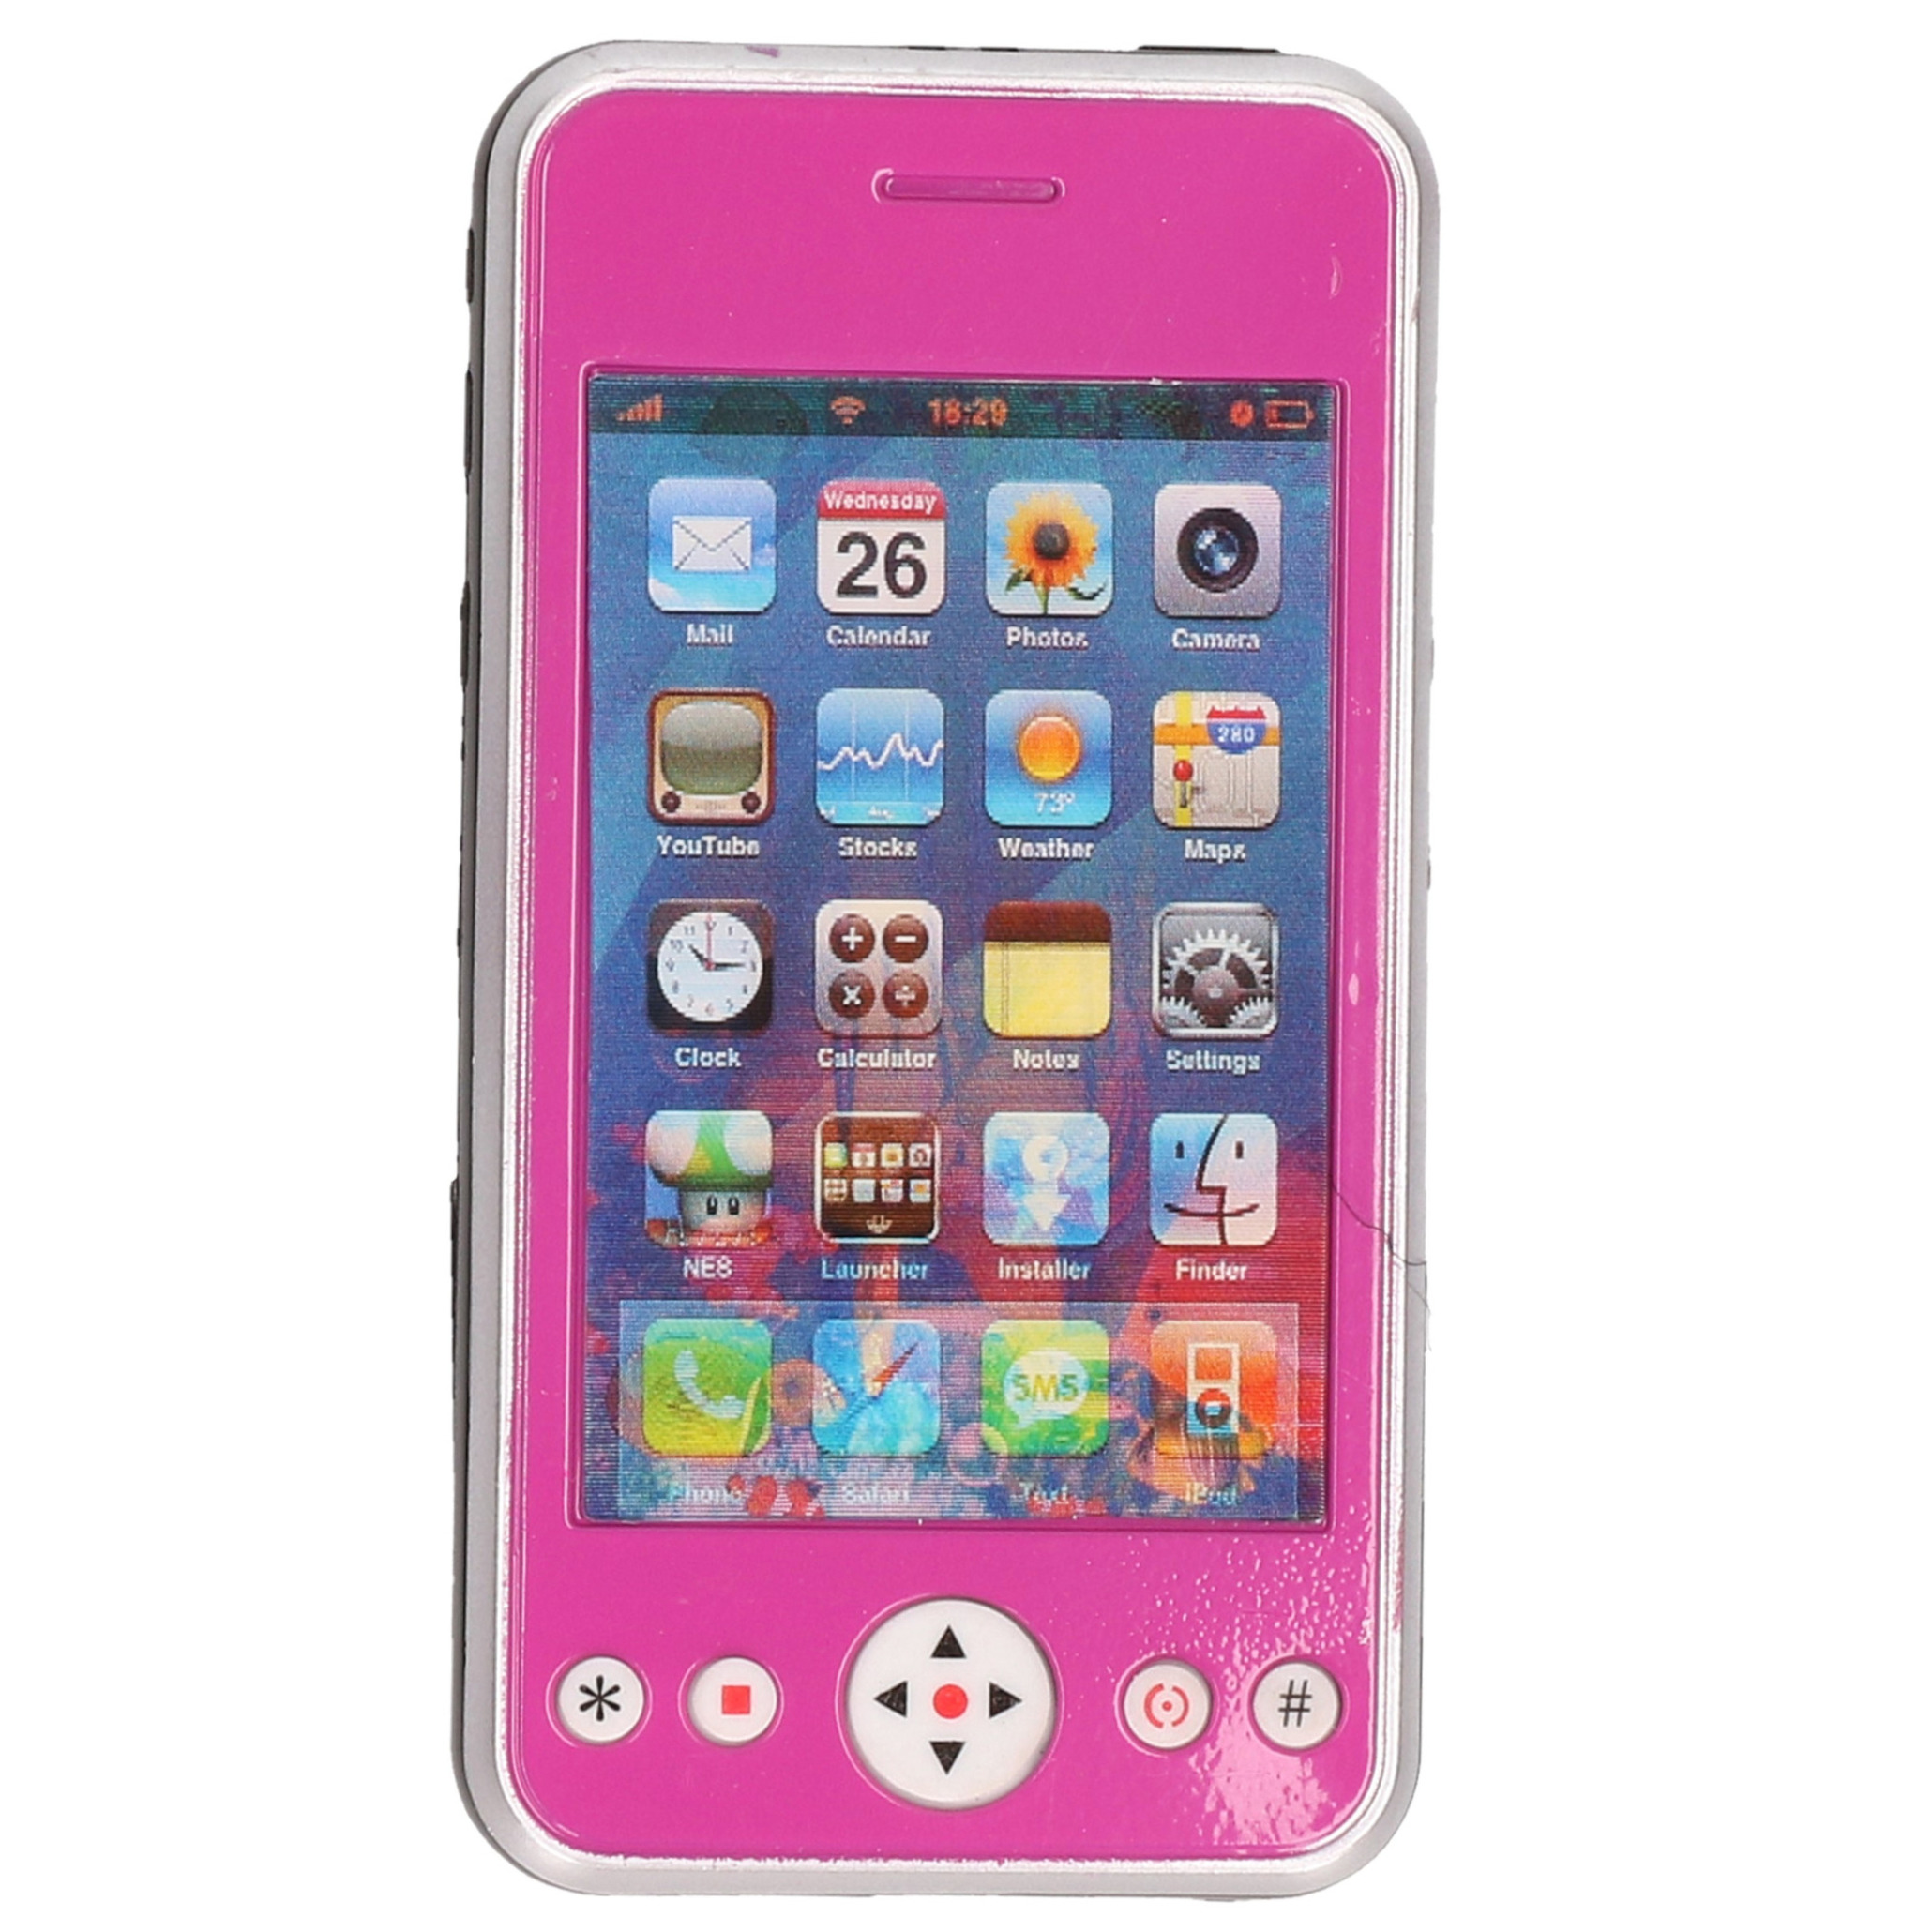 Speelgoed smartphone/mobiele telefoon roze met licht en geluid 11 cm